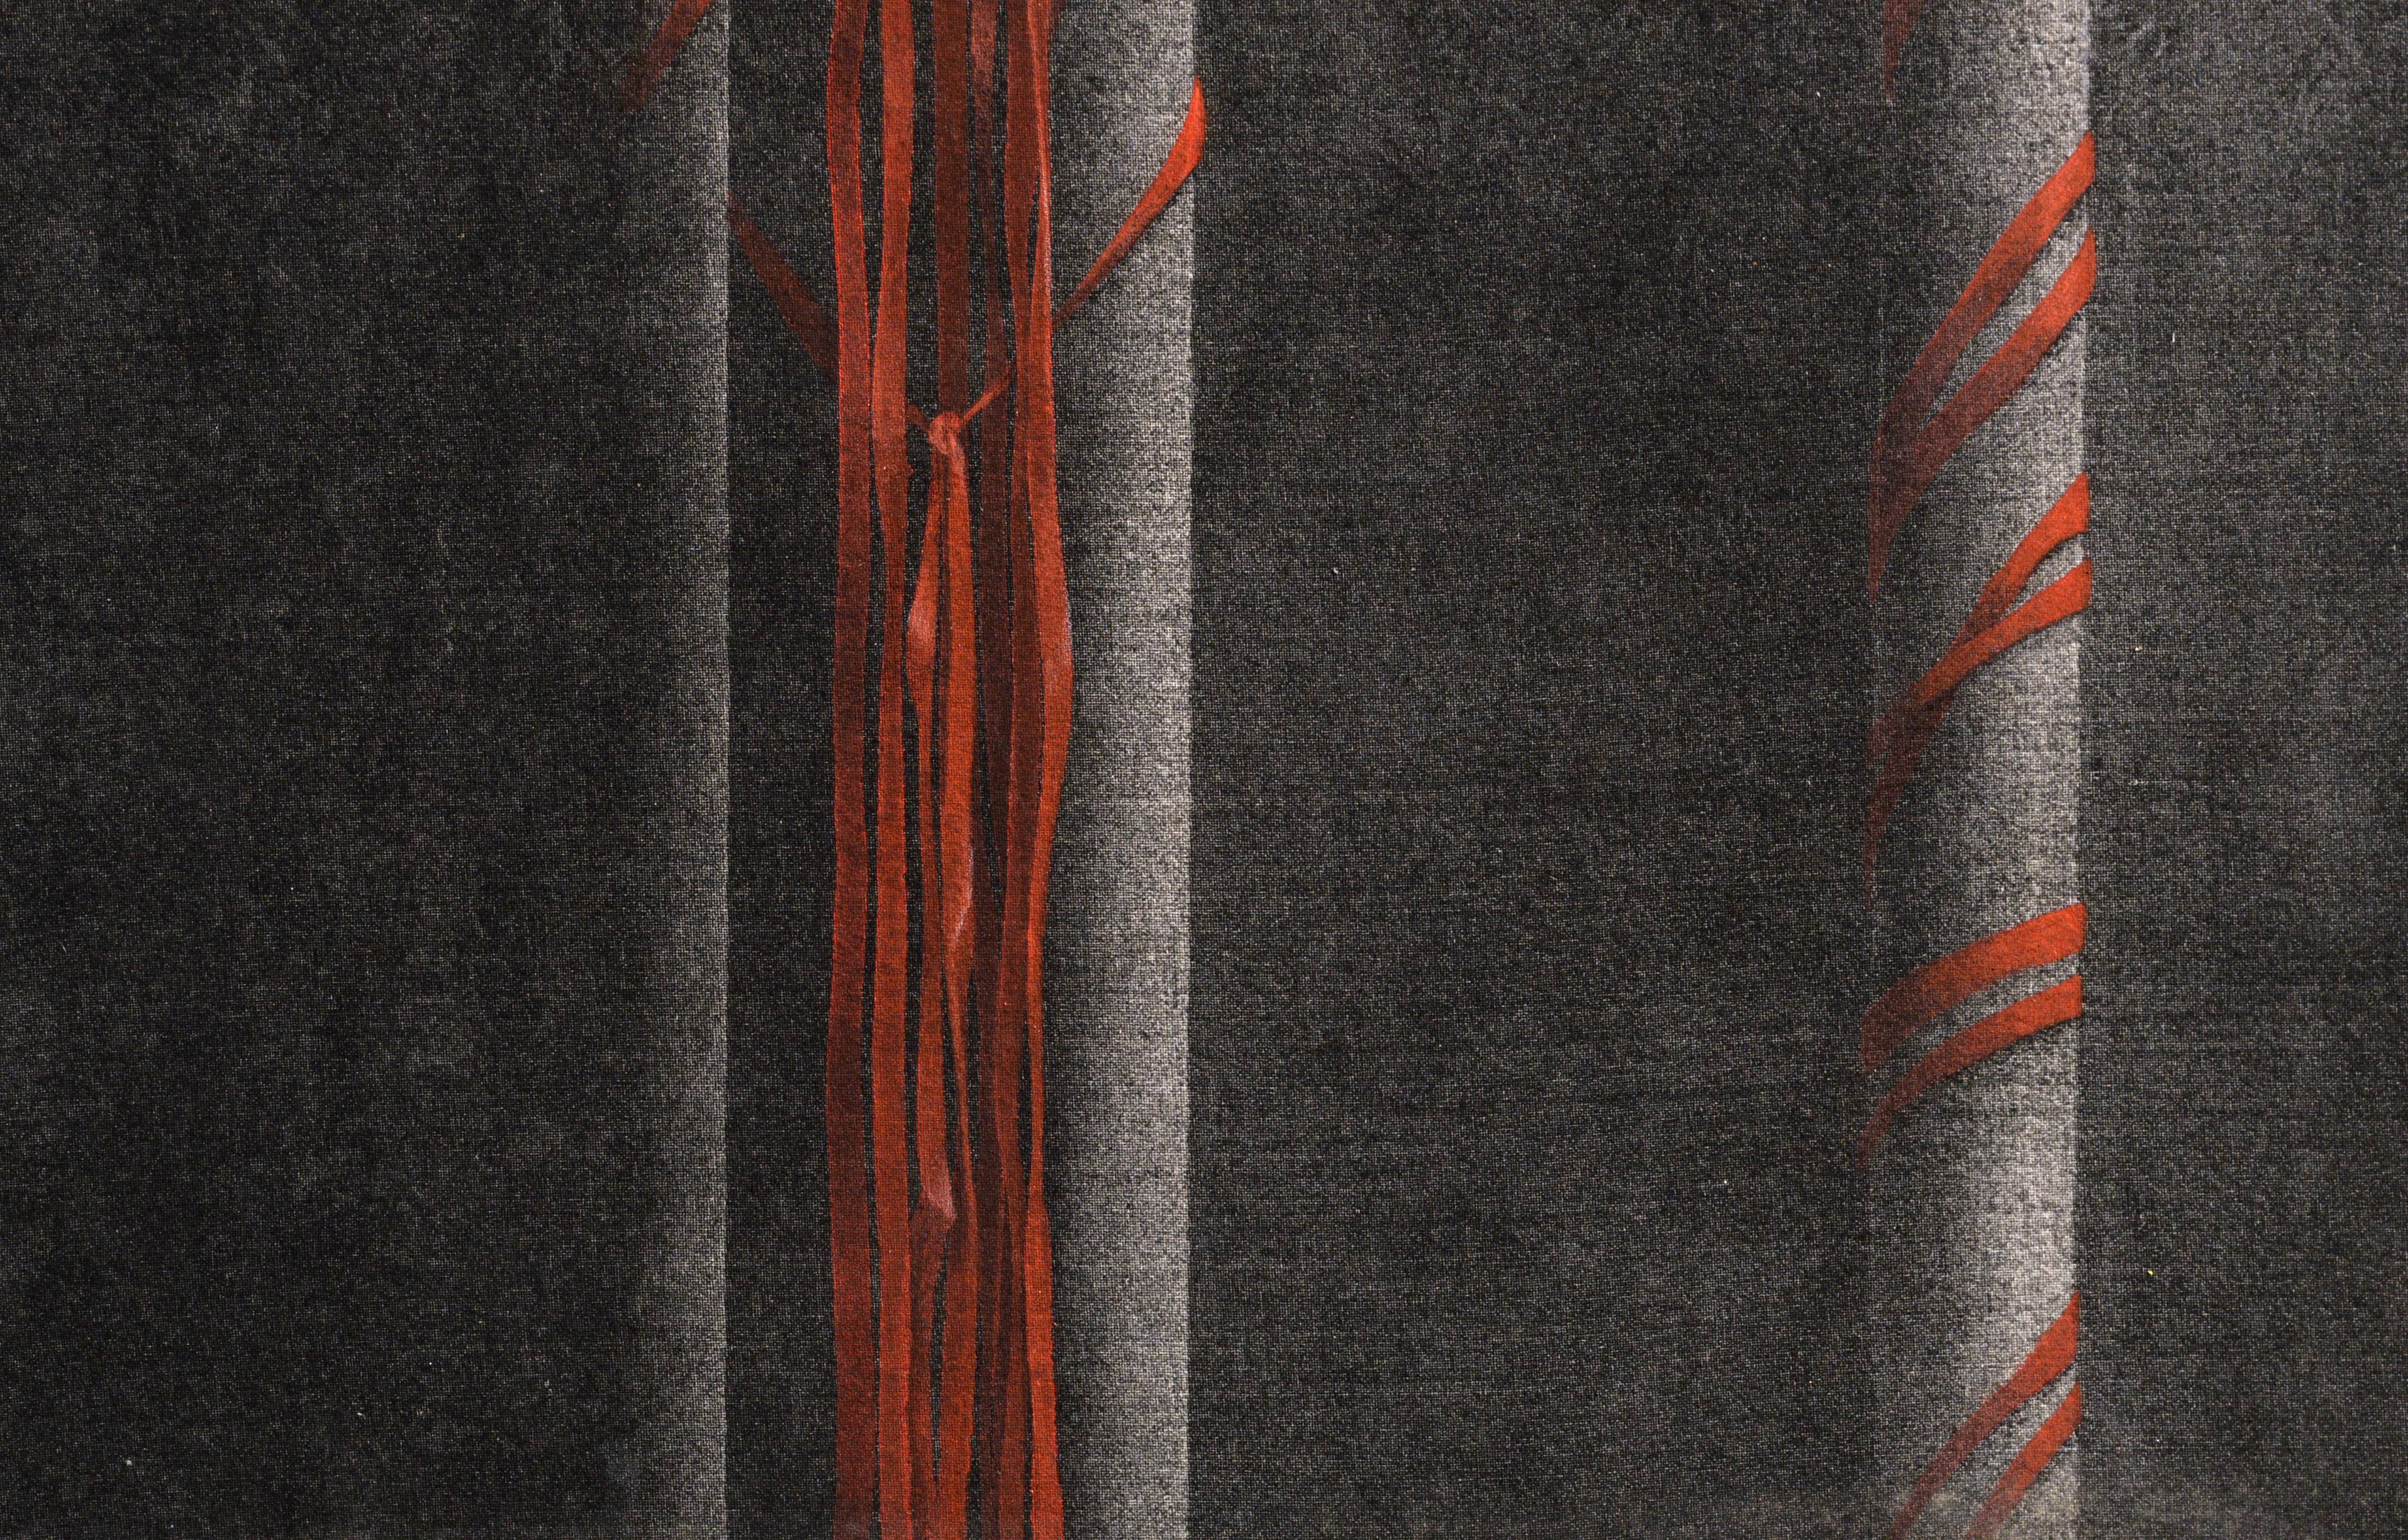 Vergrößerter (handgemalter) Siebdruck von Patricia A. Pearce (Amerikanerin, geb. 1948). Präsentiert in einer neuen Doppelmatte aus Schwarz und Grau. Unsigniert, wurde aber mit einer Sammlung von Pearce's Arbeiten erworben. Ungerahmt. Bildgröße: 16